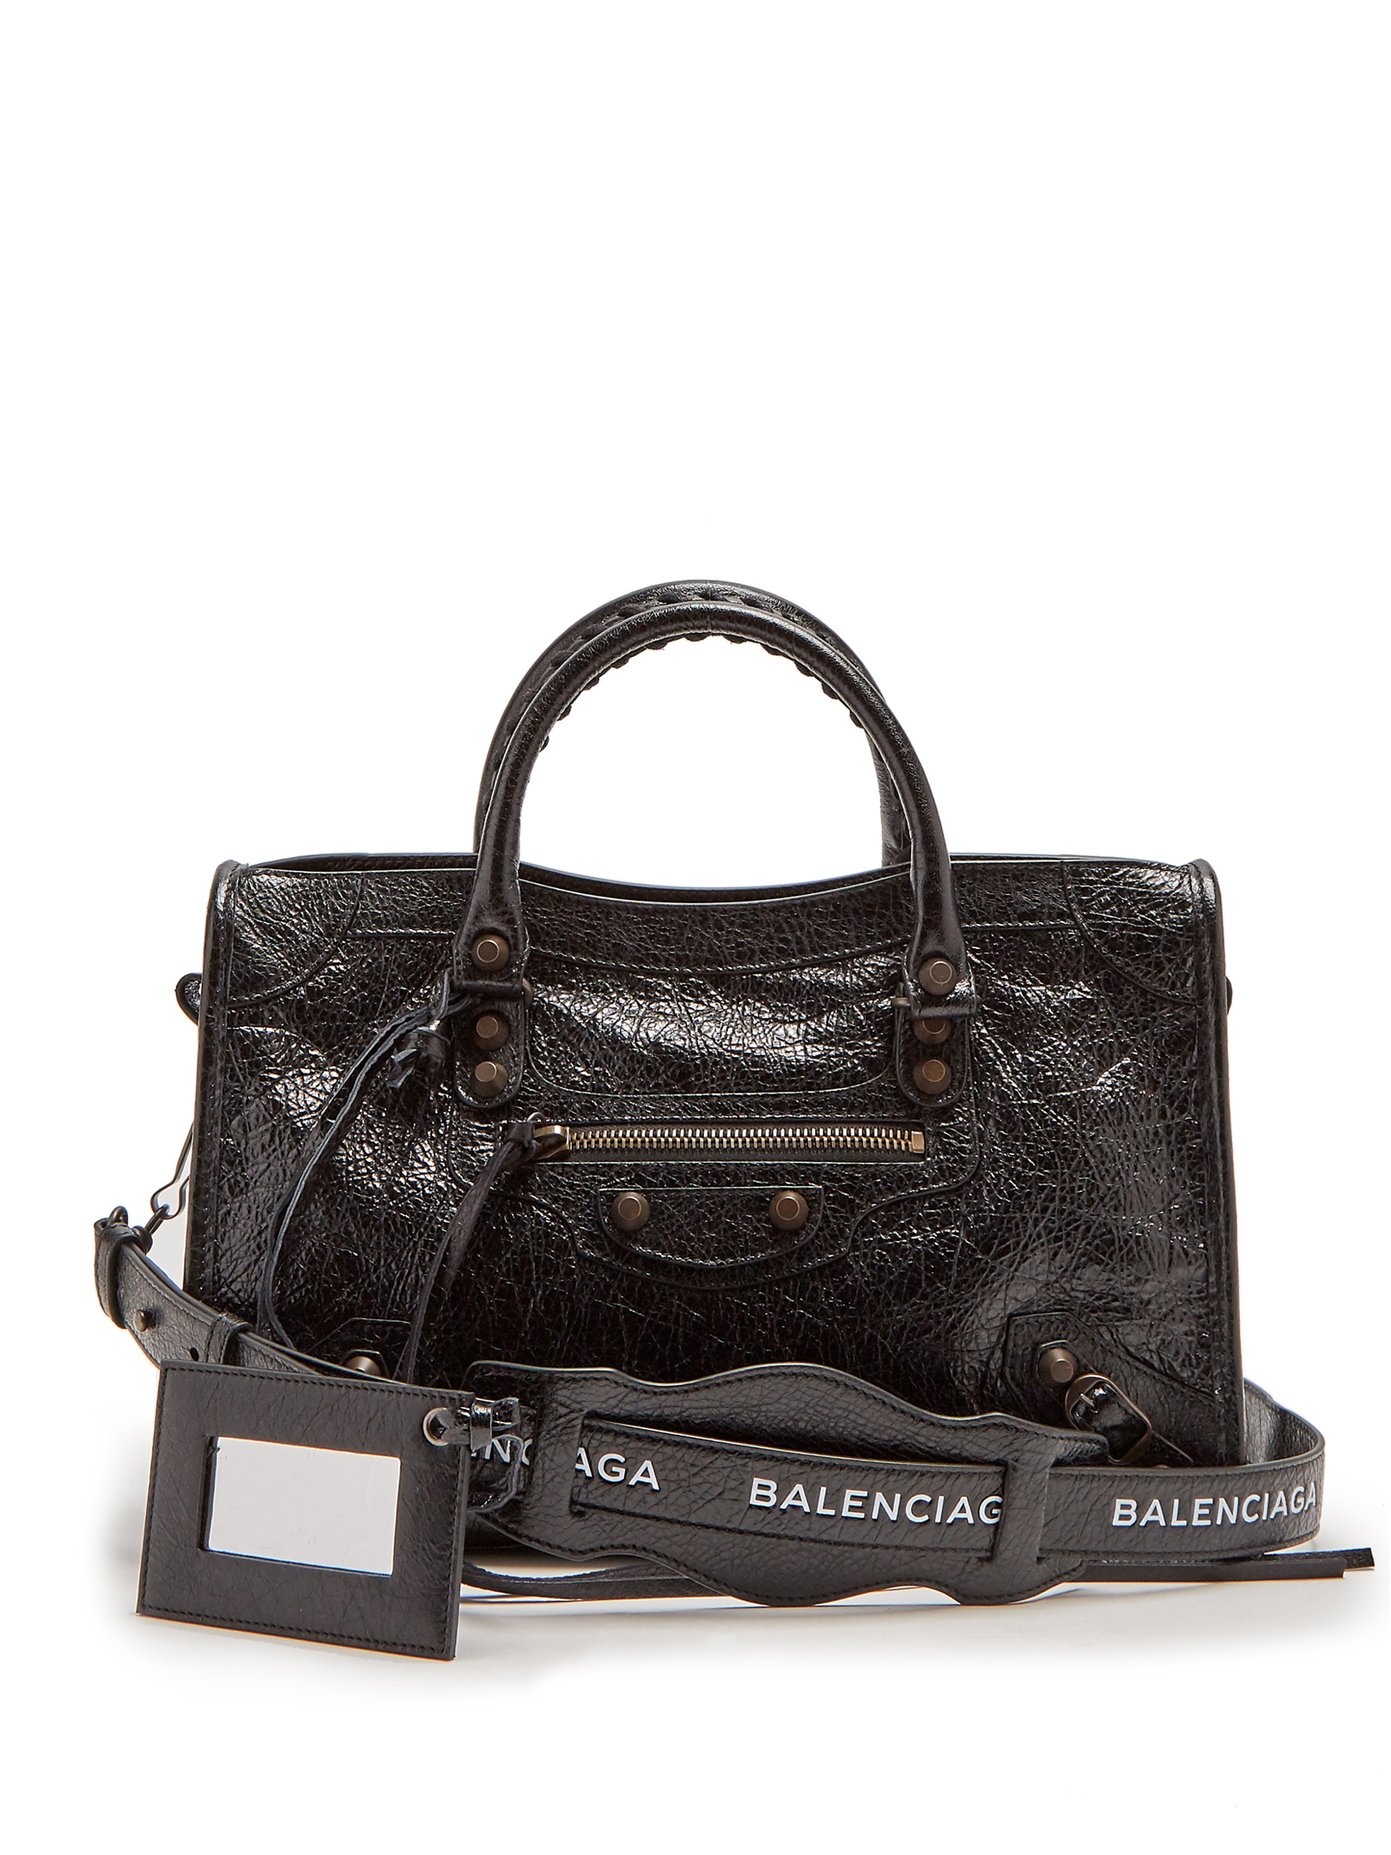 Where to buy the Balenciaga City bag